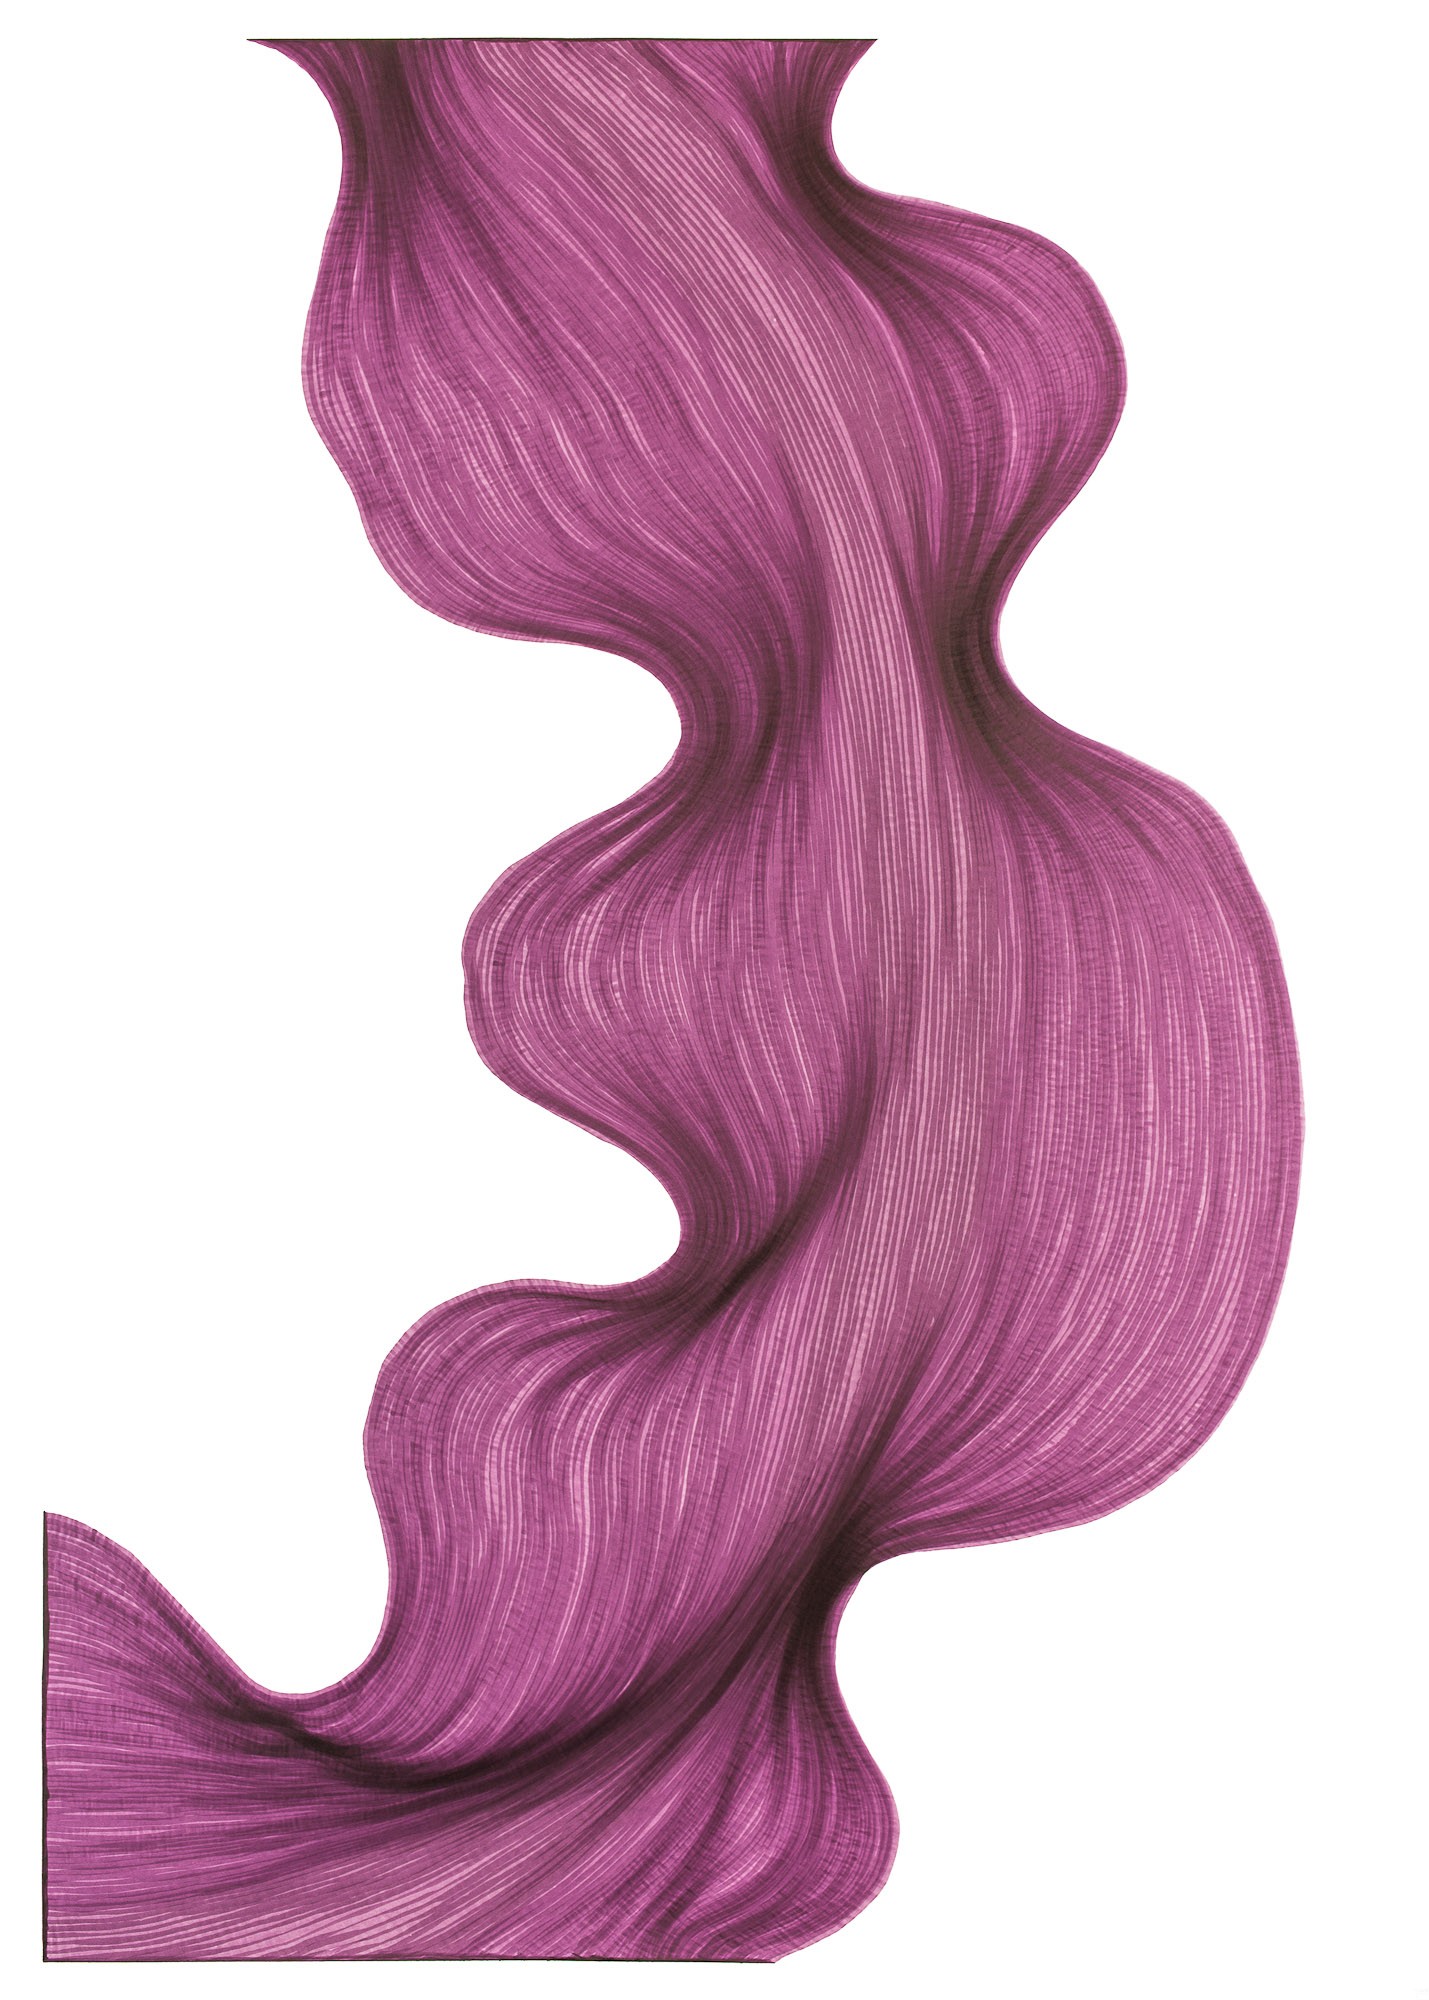 Bubbly Violet | Lali Torma | Zeichnung | Kalligraphie Tinte auf Papier